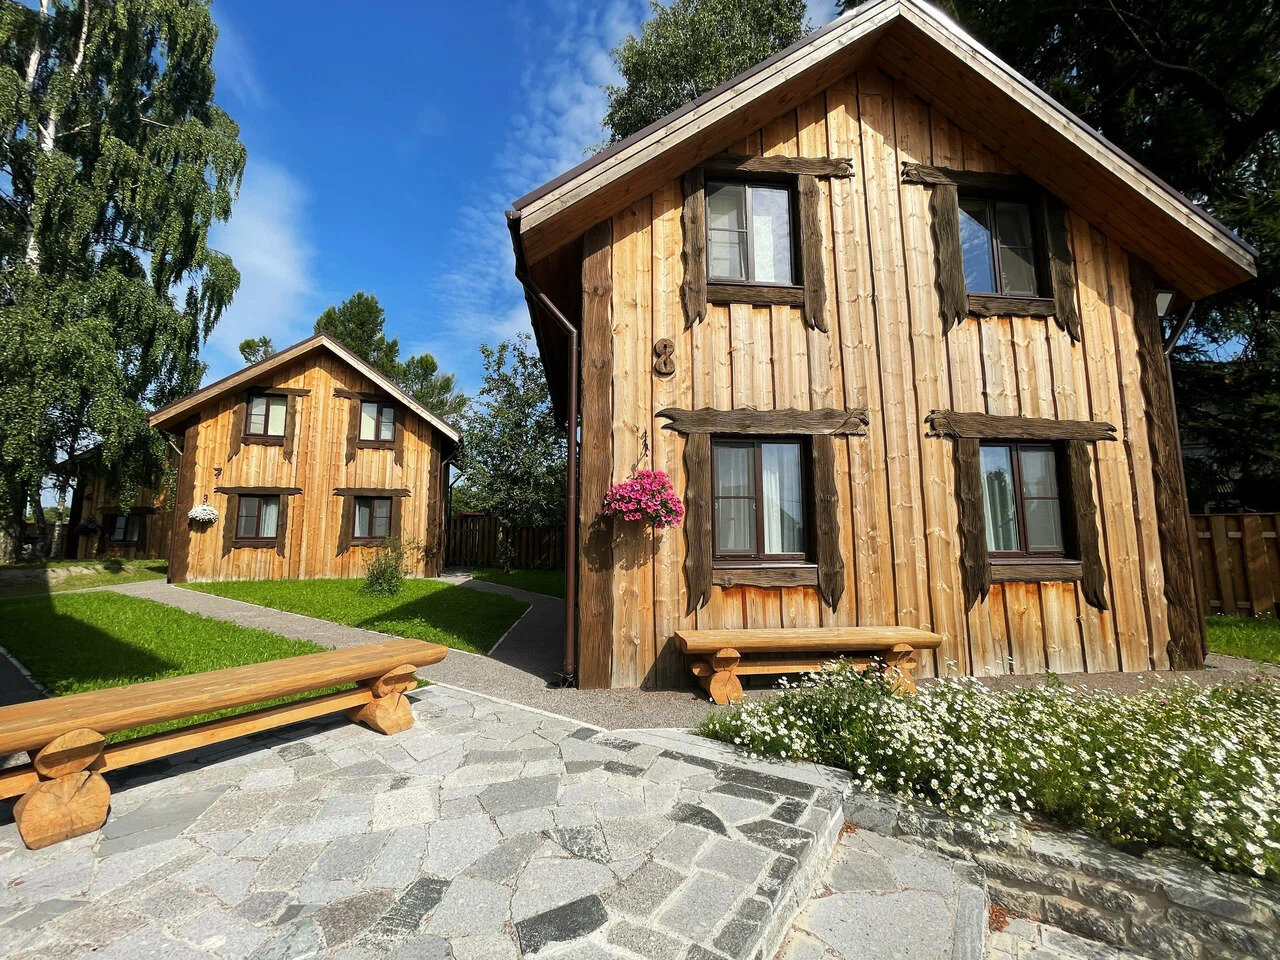 Коттеджи хутора «Пукинниеми» сделаны из дерева в лаконичном скандинавском стиле.